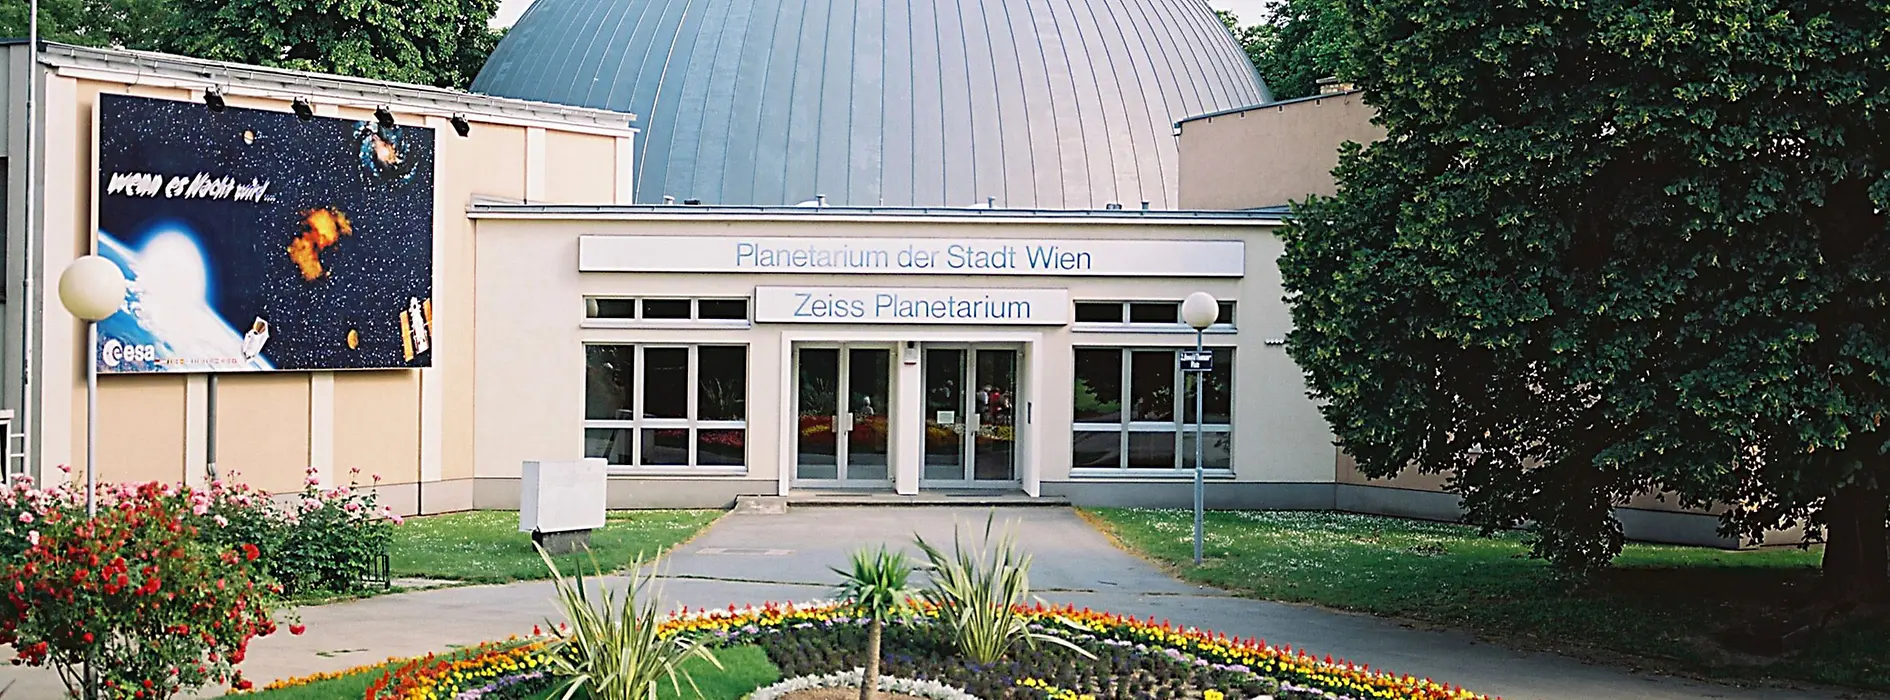 Außenansicht Planetarium Wien im Prater